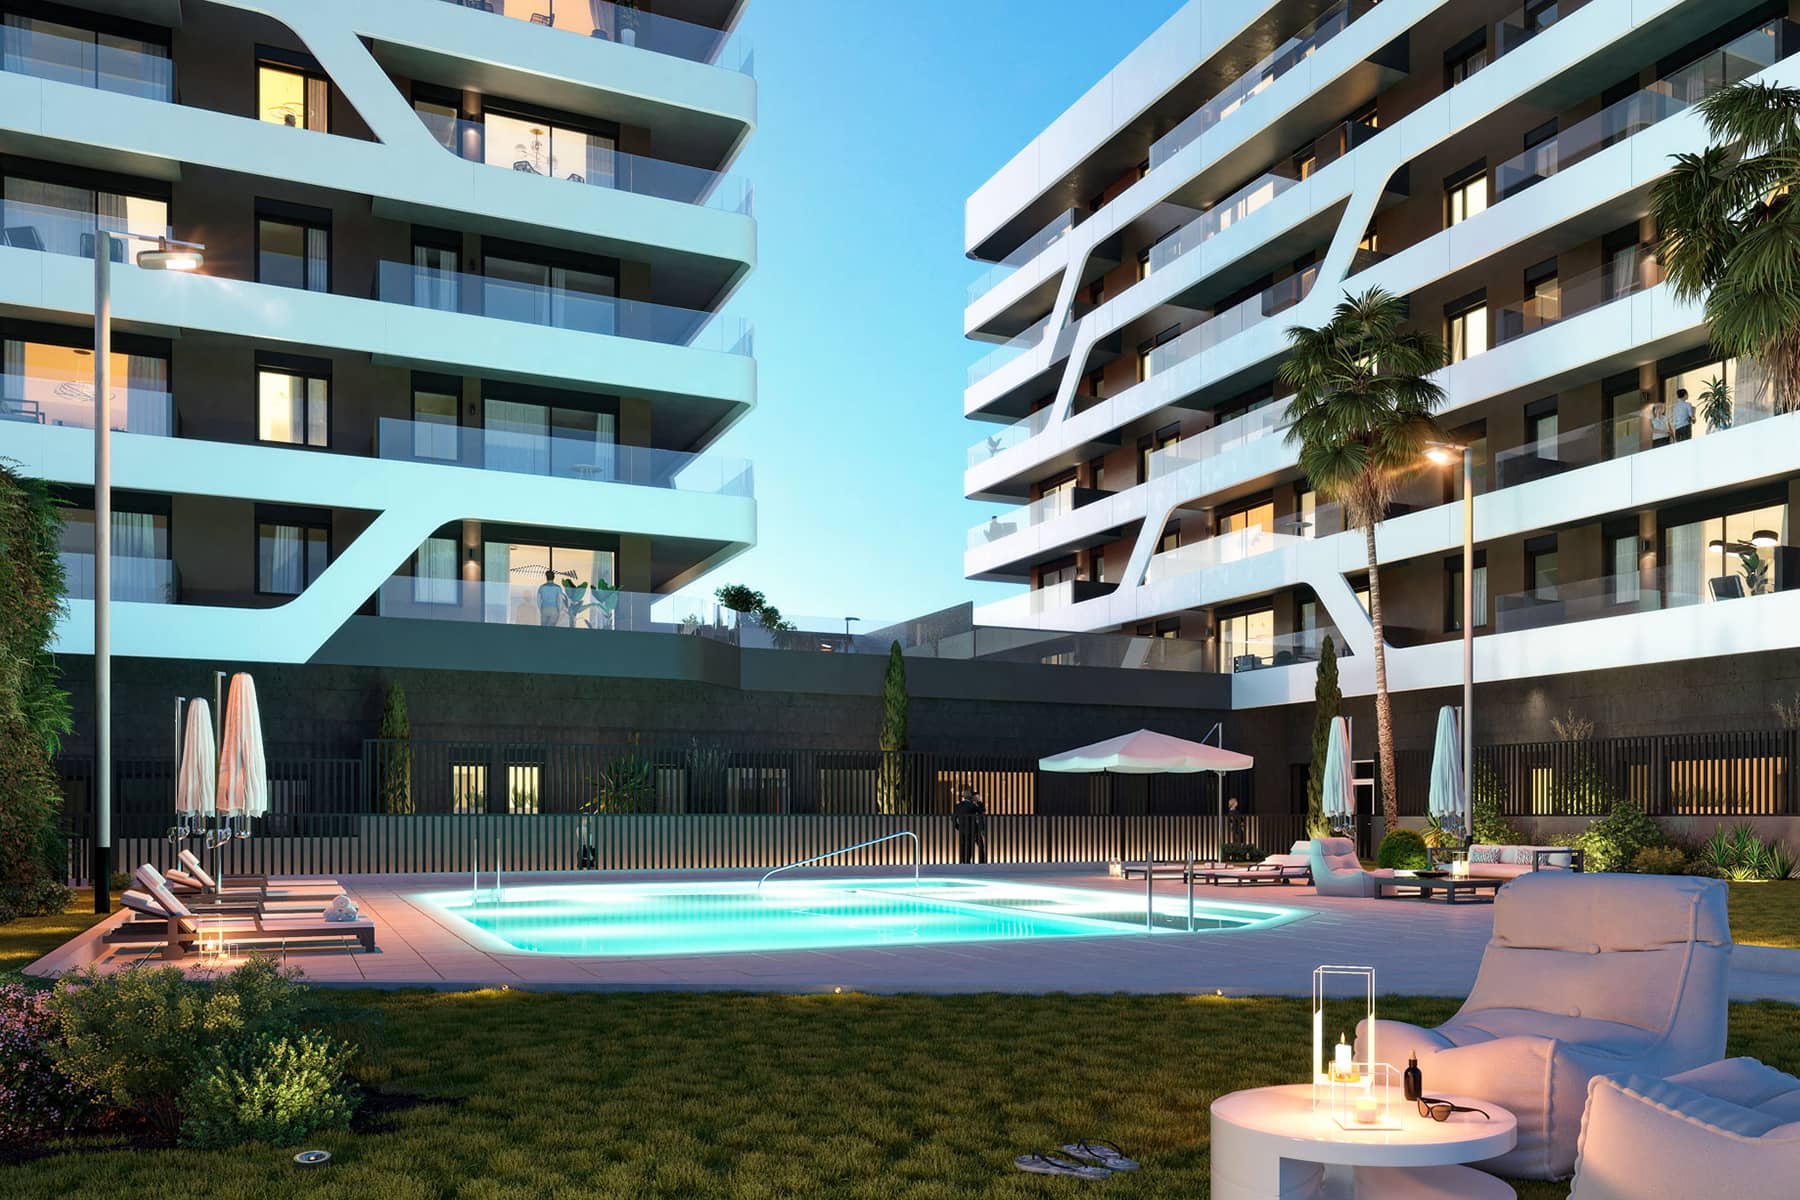 Edificio en primera línea de mar ubicado en Mataró, Barcelona. Urbanización de jardín privado cuenta con piscina, solárium, zona de hamacas.